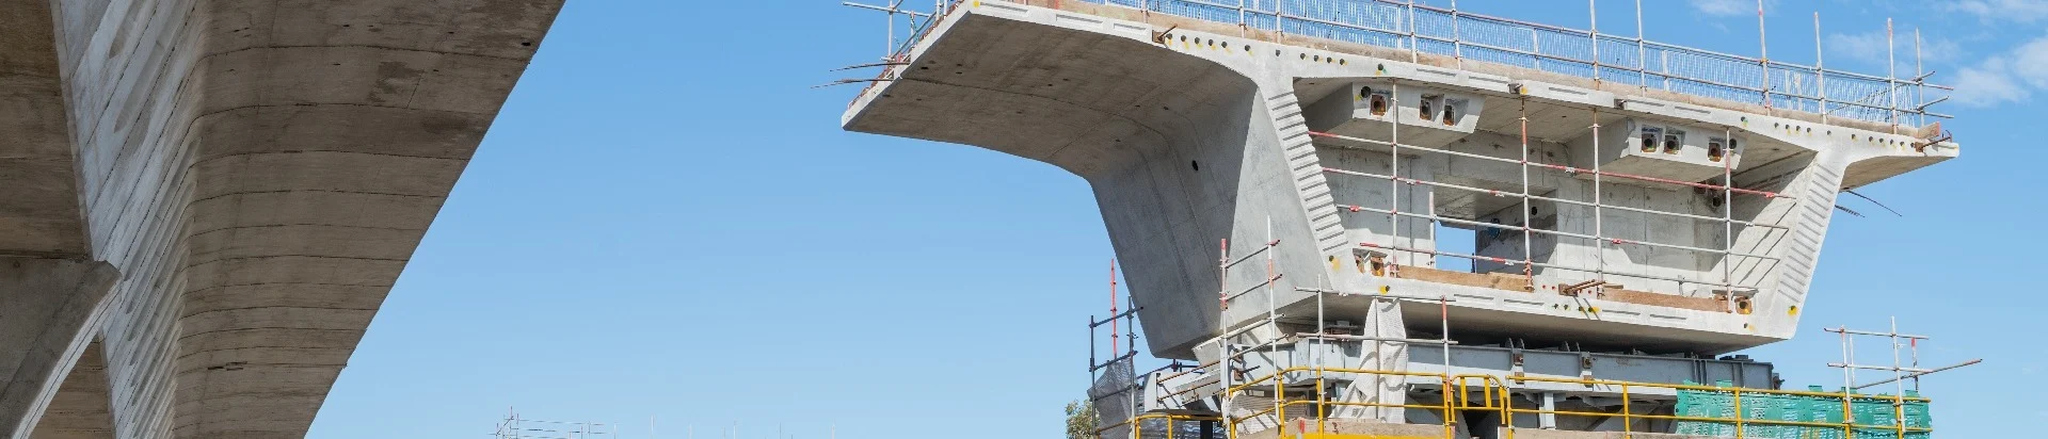 Projekt mostu zespolonego – przejście drogowe w Sinaia, Rumunia